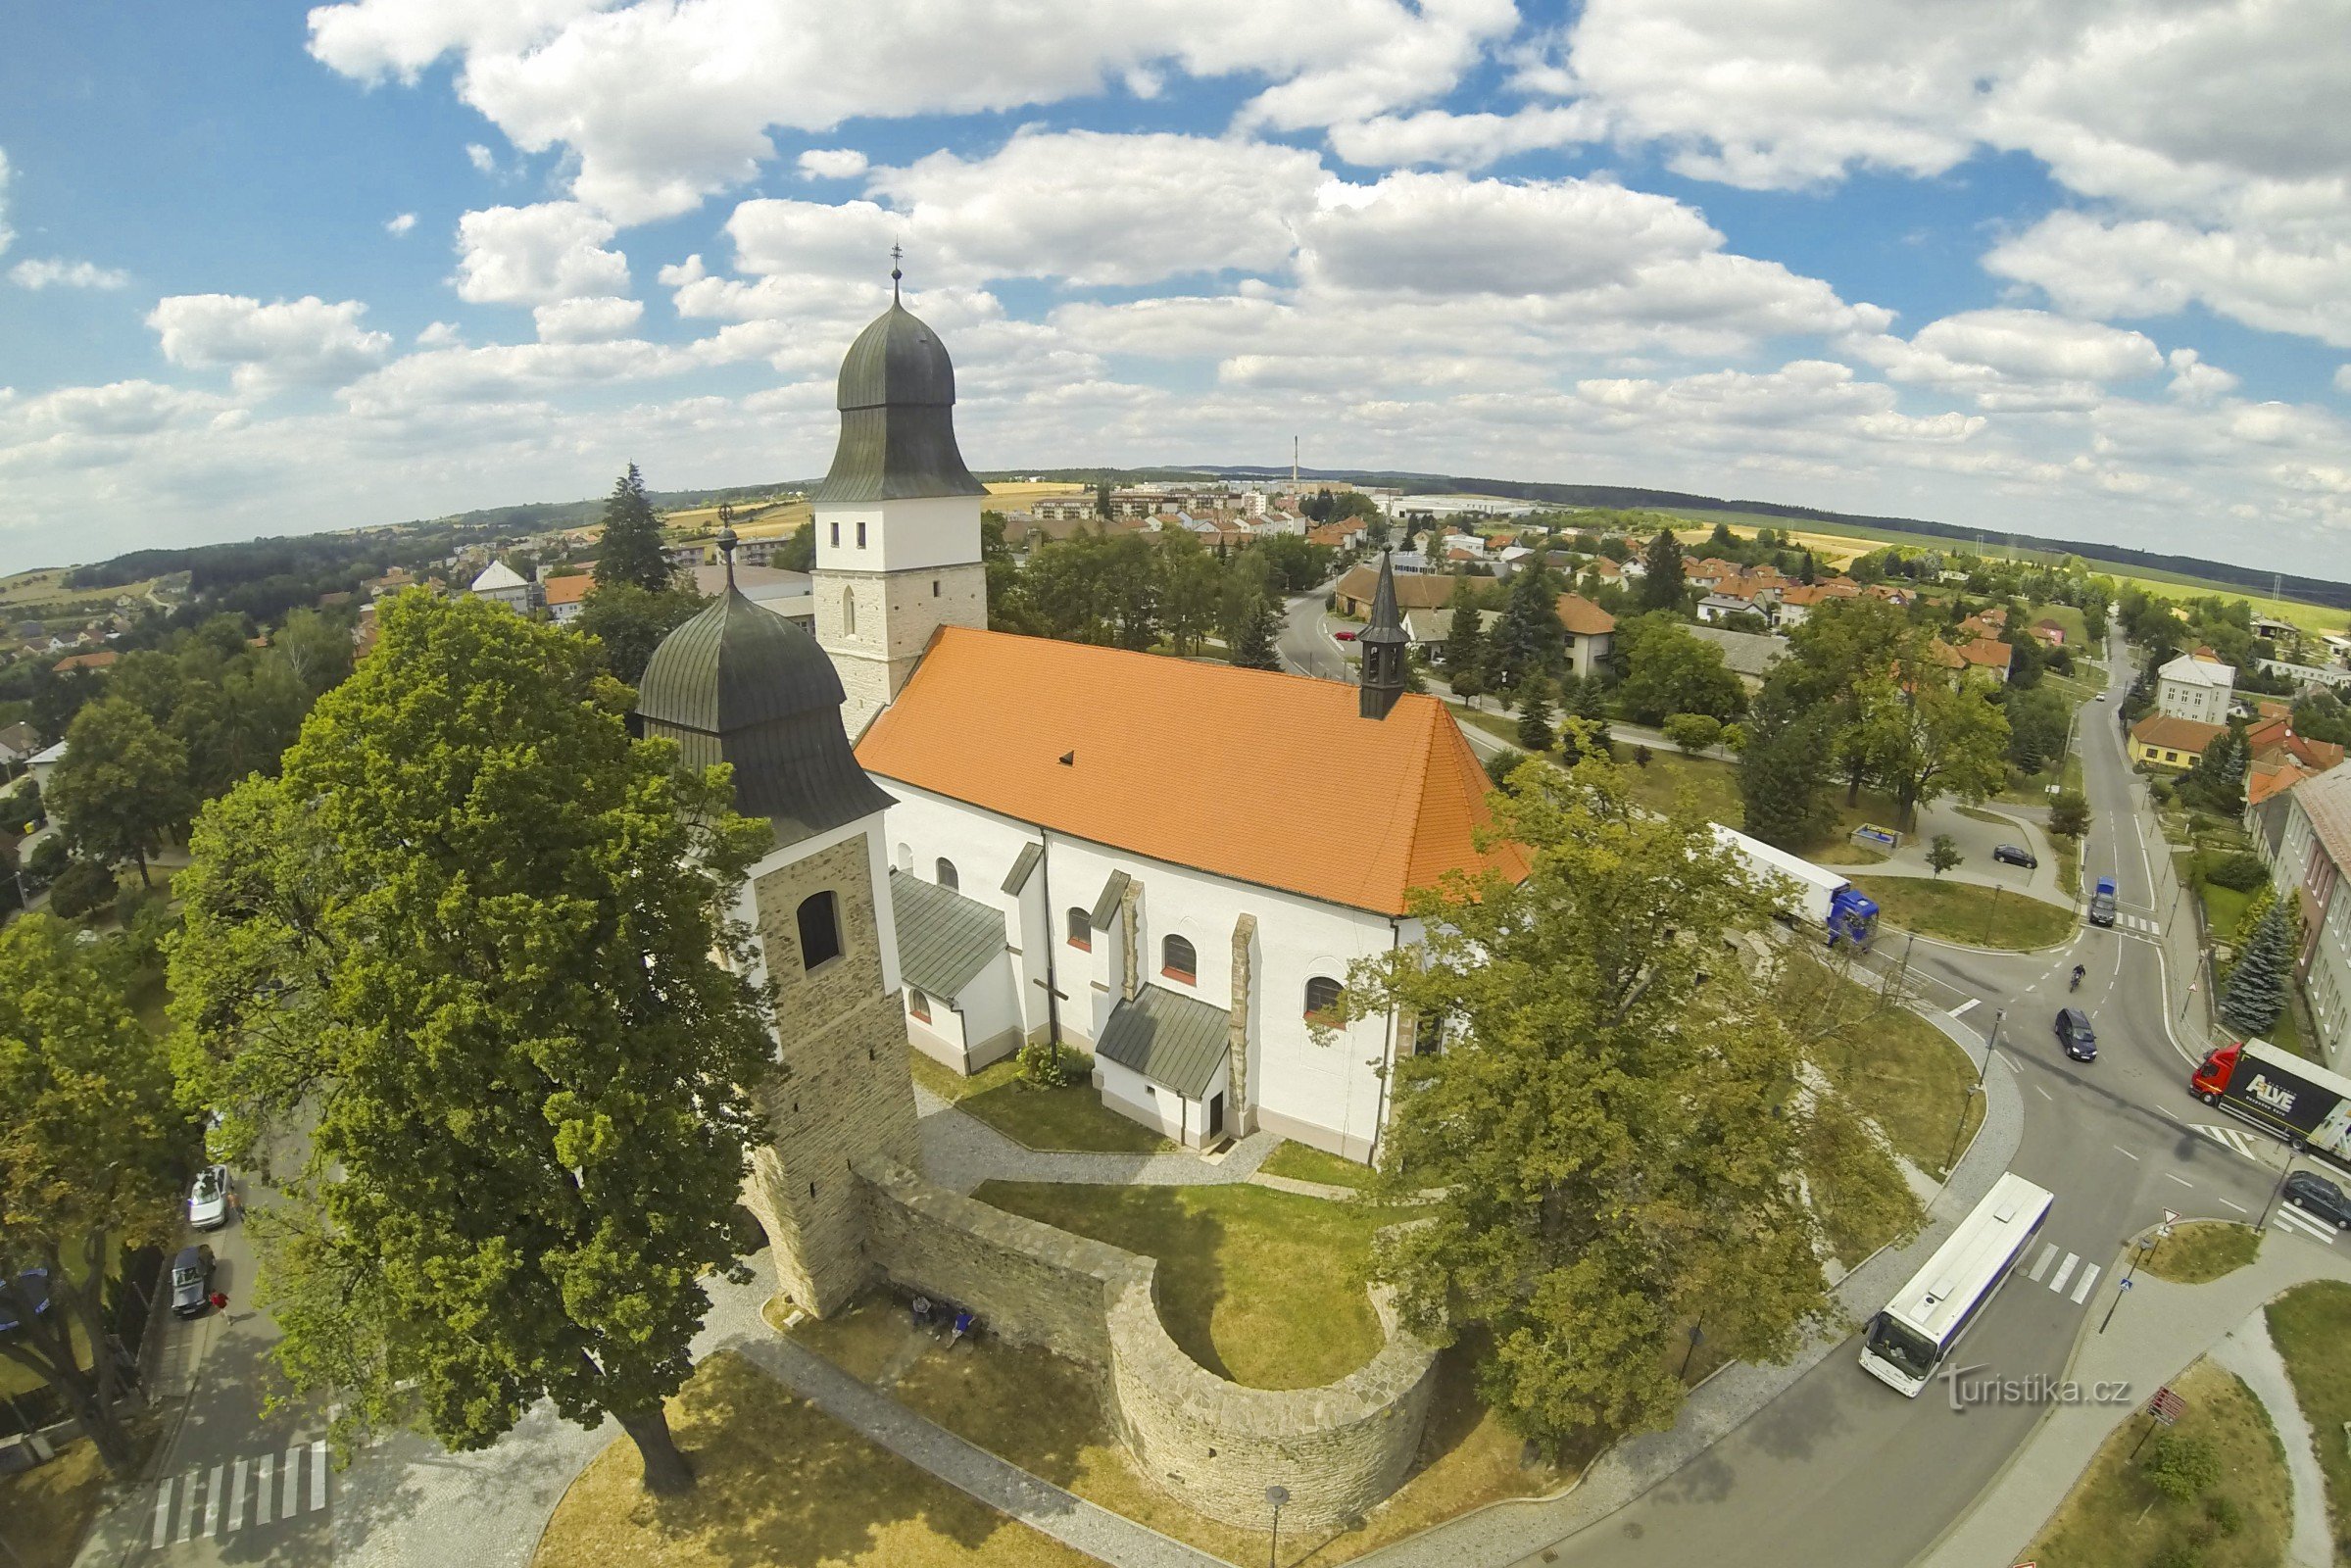 The city of Velká Biteš